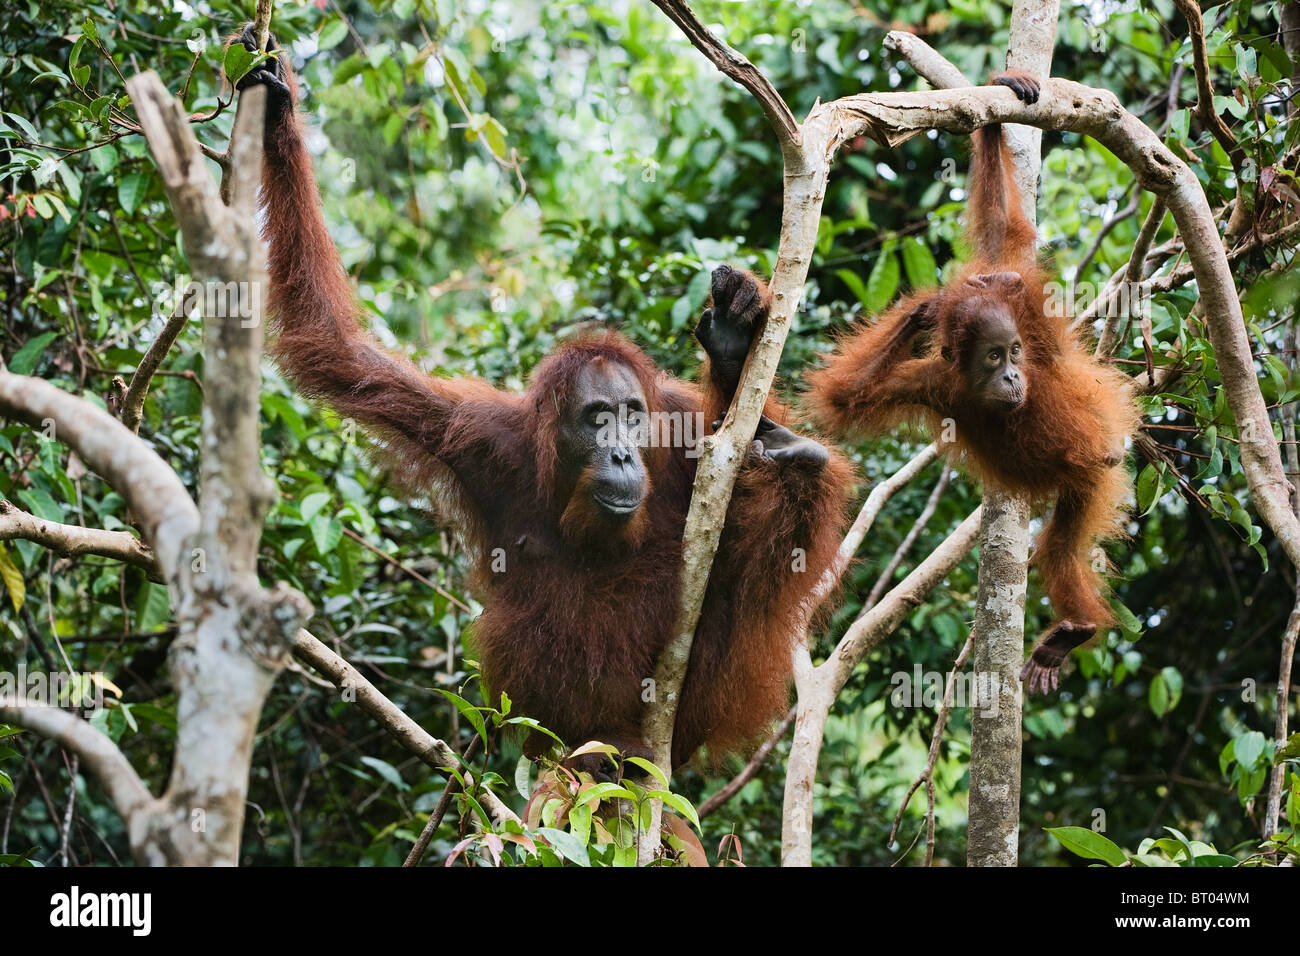 Weibchen der Orang-Utan mit dem Kind in Zweigen der Bäume. Mutter und Kind Orang-Utans. Stockfoto